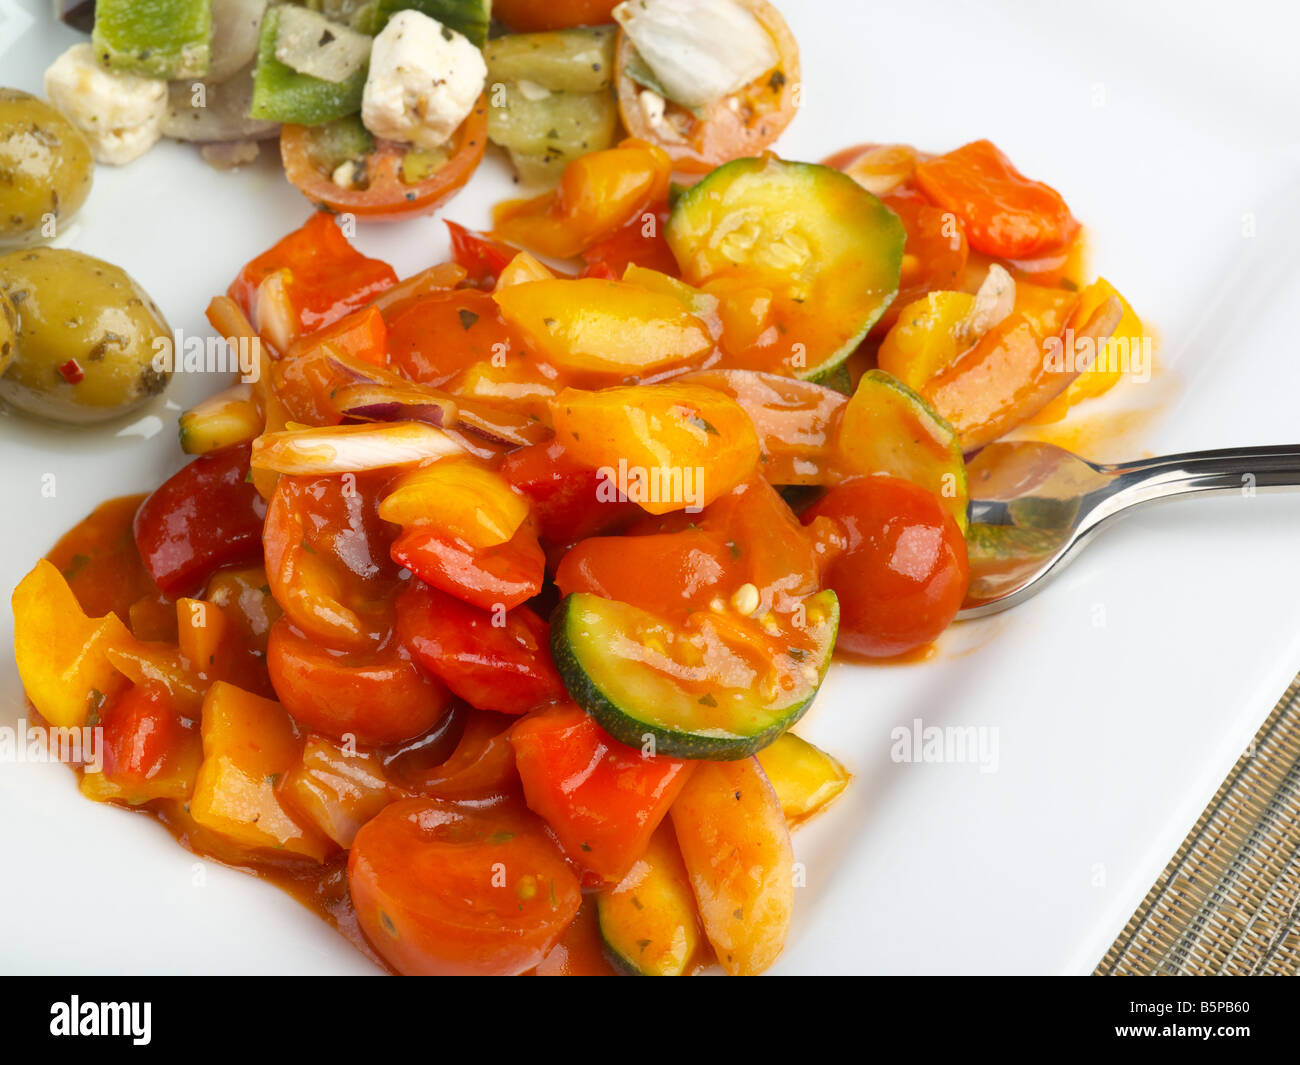 Mediterranes Essen mit saftigen Frsh Oliven Feta Käse Paprika und anderen Zutaten Stockfoto